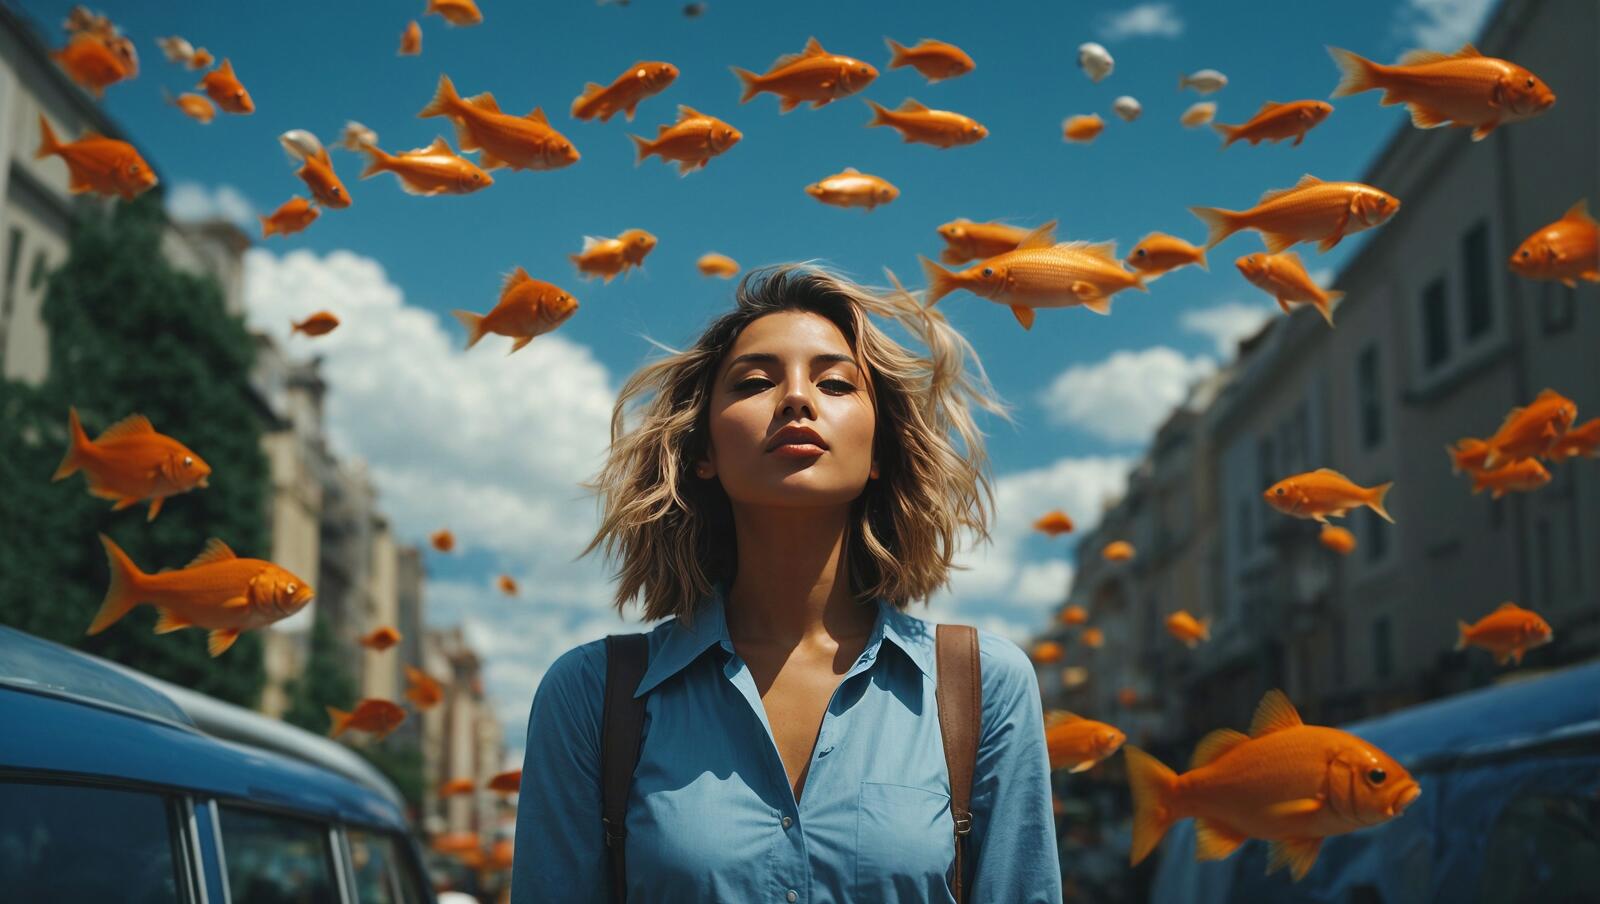 Бесплатное фото Женщина стоит под золотыми рыбками, парящими в воздухе.